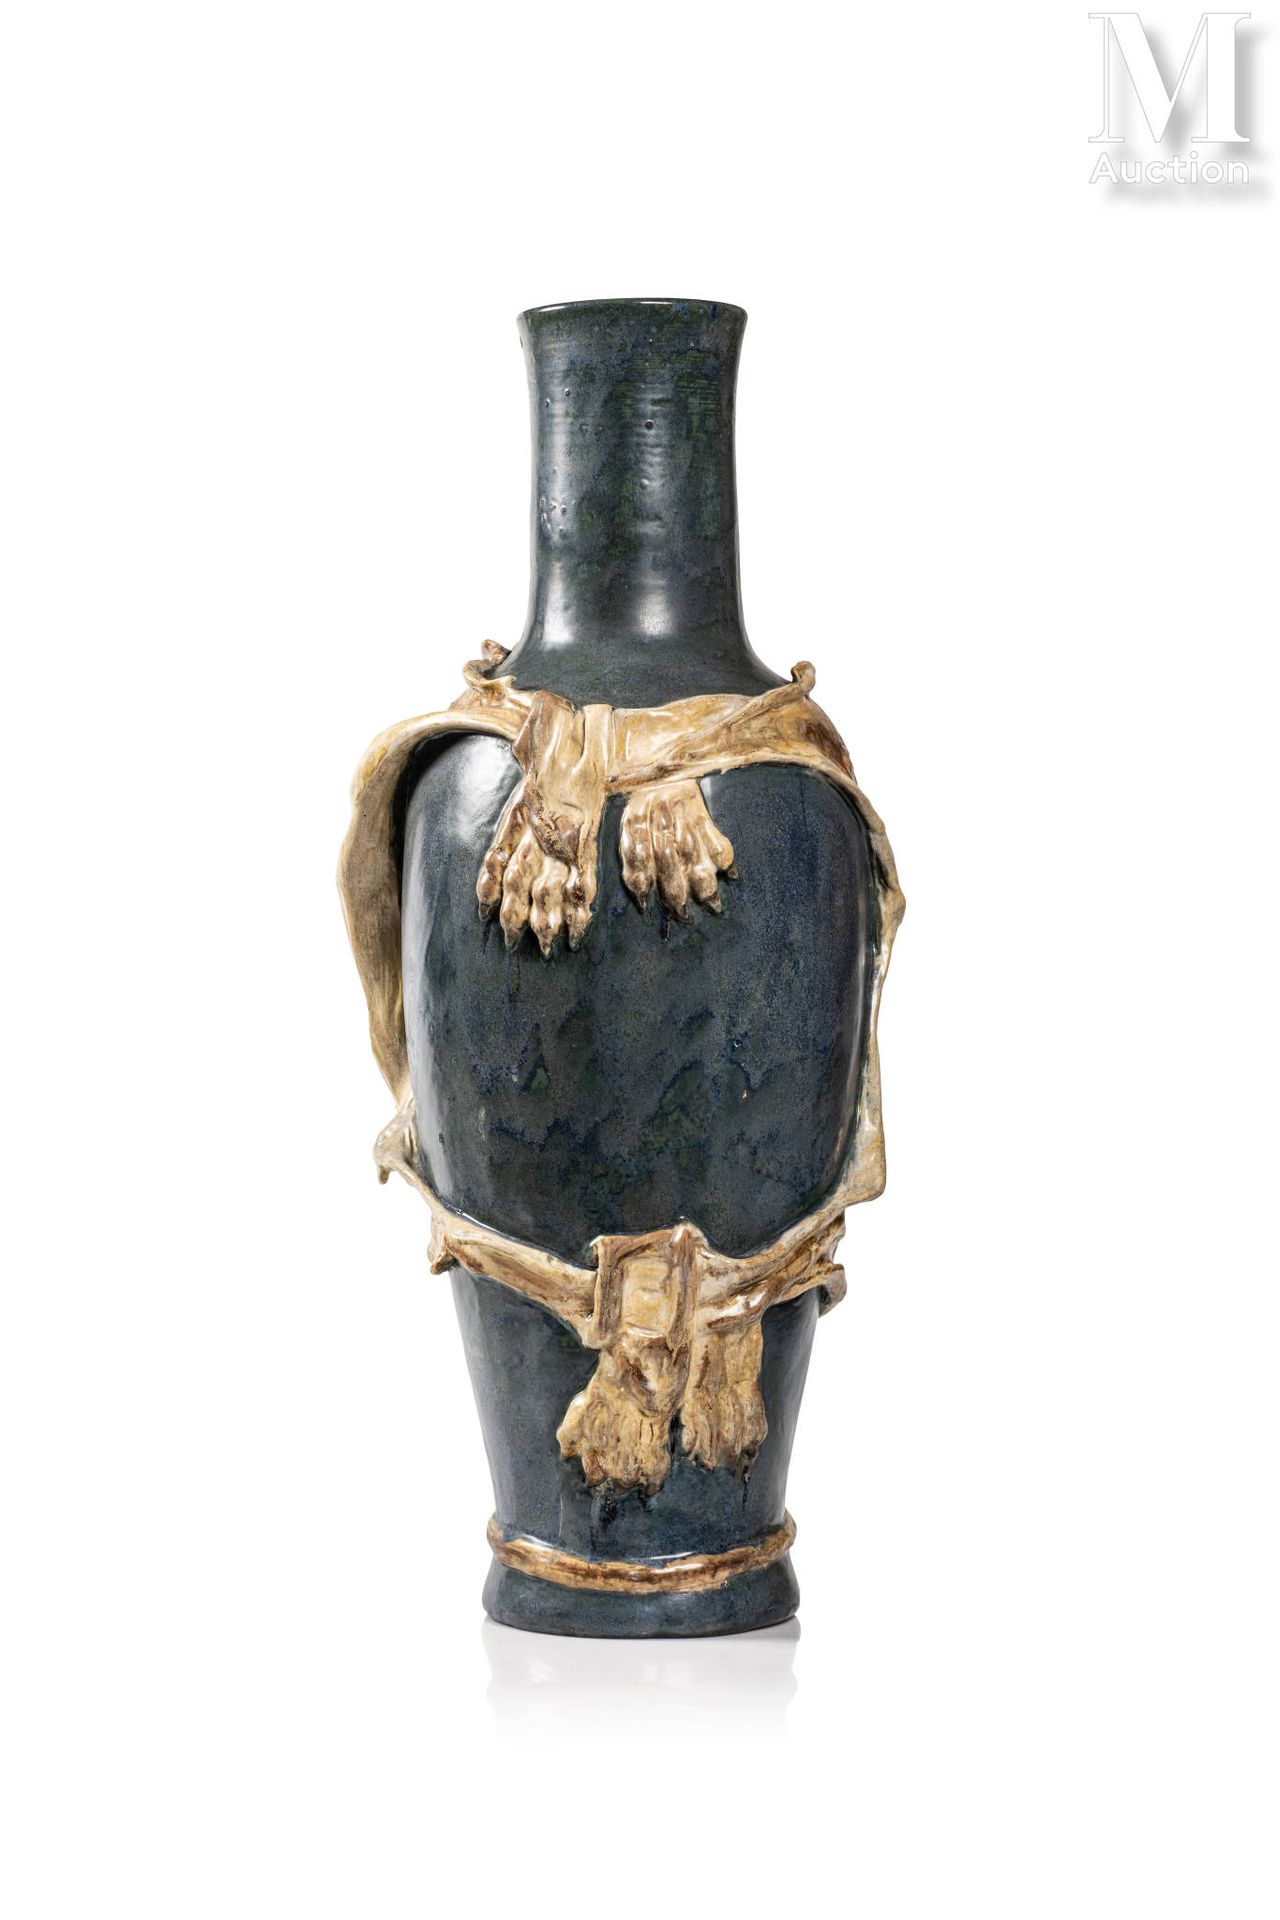 Alfred RENOLEAU (1854 - 1930) circa 1900
Wichtige Vase aus ockerbraun, beige und&hellip;